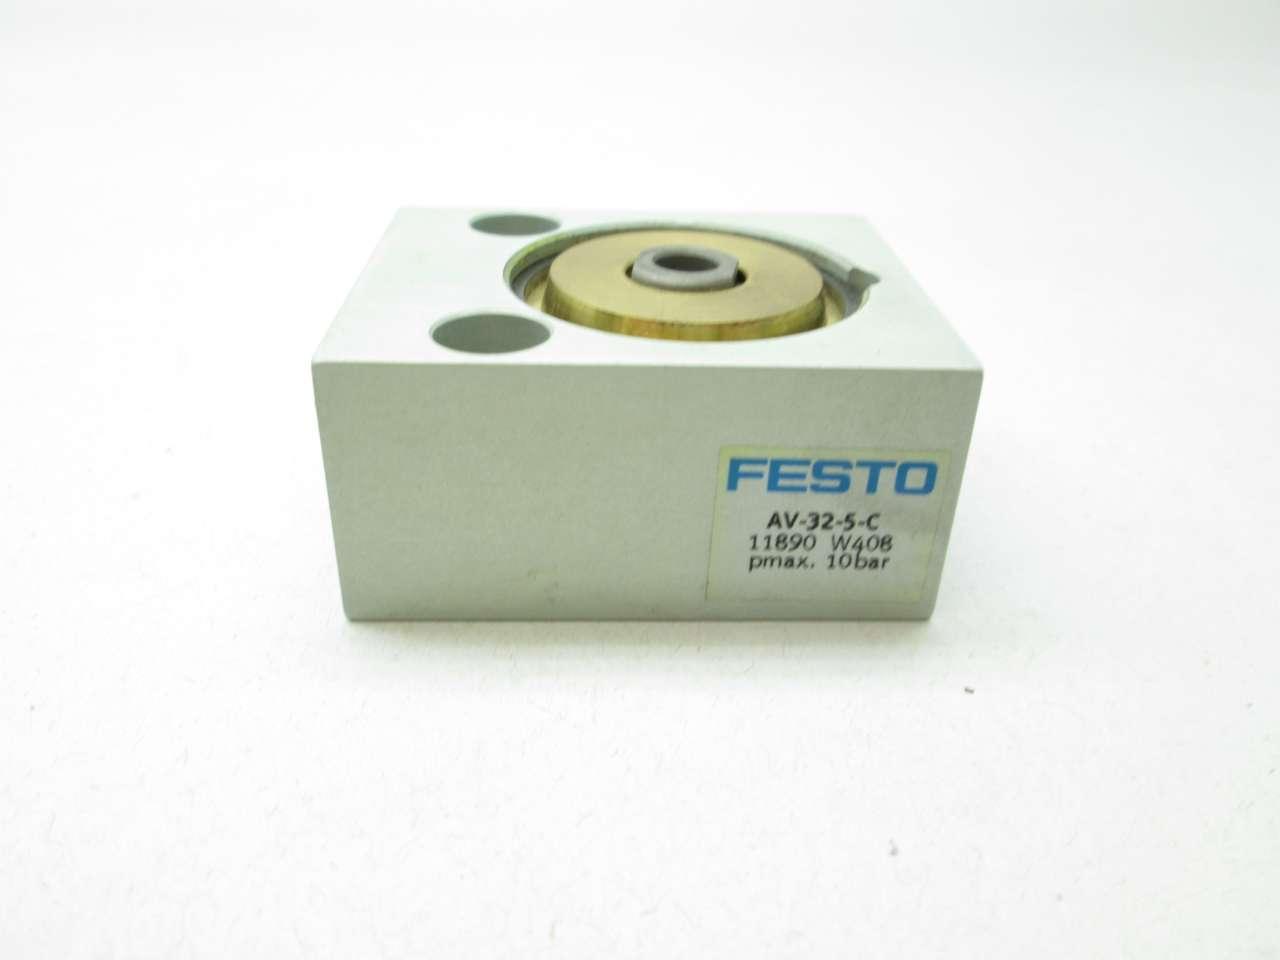 Details about   Festo AV-32-5-C Pneumatic Cylinder 11890 Cylinder W408 C3175-R3 - 							der 11890 Zylinder W408 data-mtsrclang=en-US href=# onclick=return false; 							show original title C3175-R3 